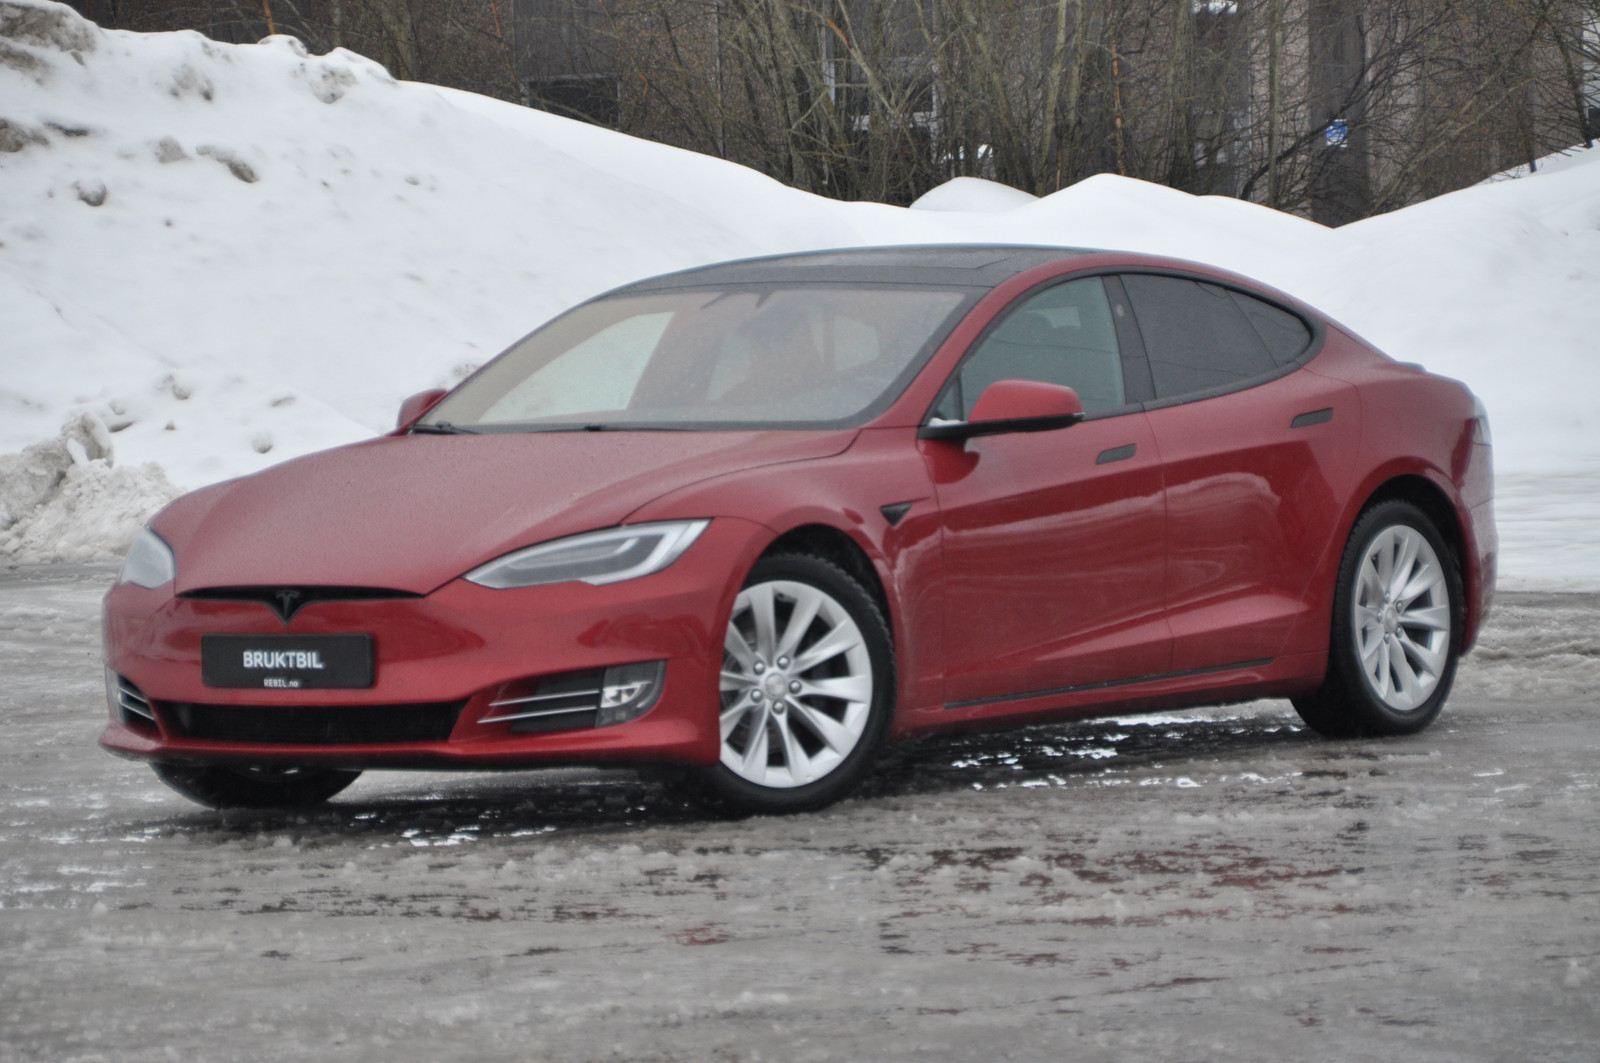 Bilde 3 av Tesla Model S